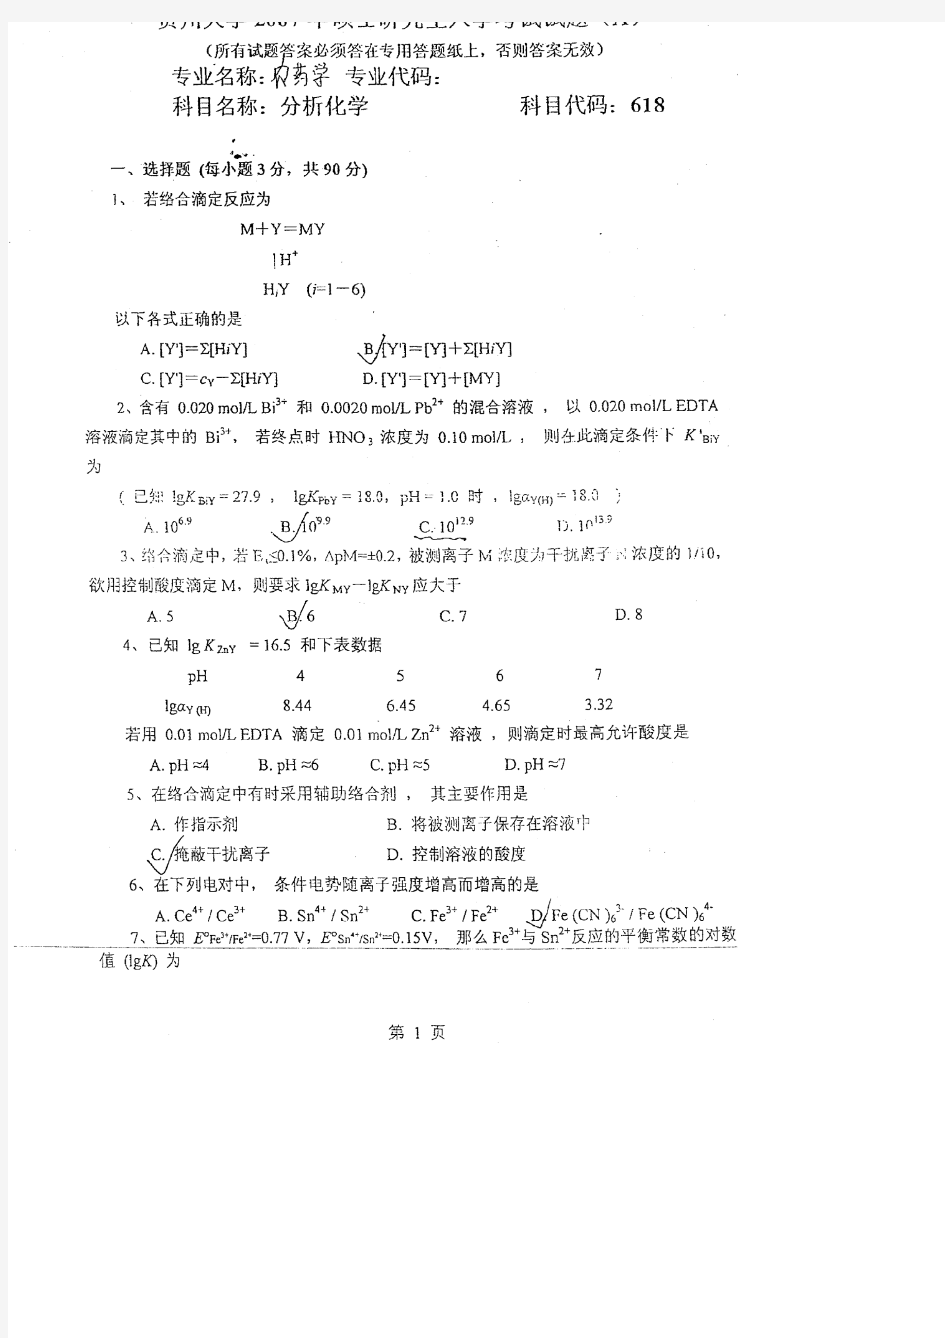 贵州大学2007农药学专业分析化学考研试题